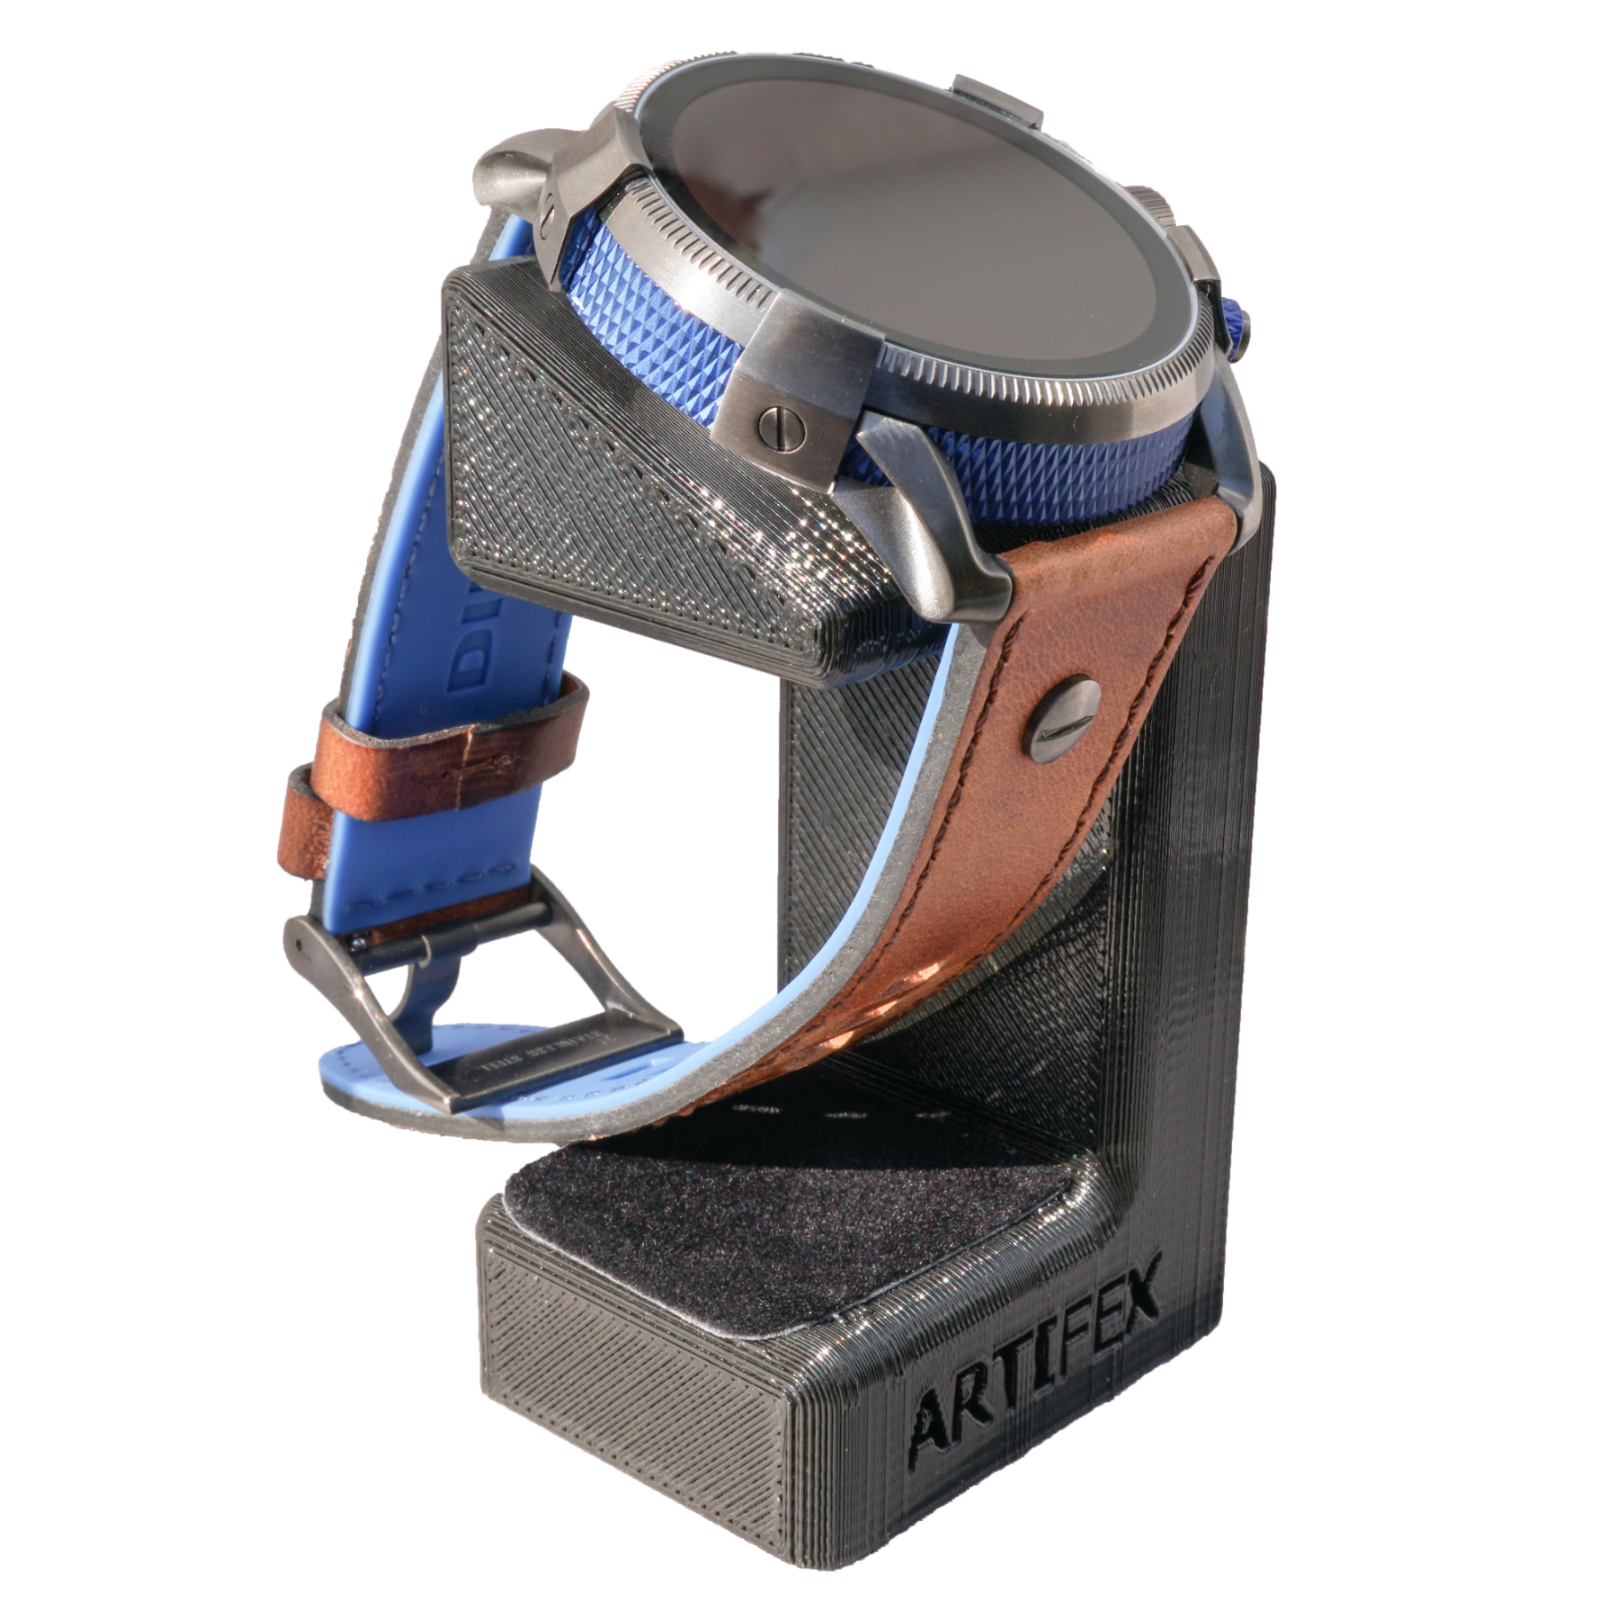 Fossil Gen 4/ 5/ MK/ Skagen/ Emporio Armani/ Diesel/ Smartwatch Stand by Artifex Design - Artifex Design 3D